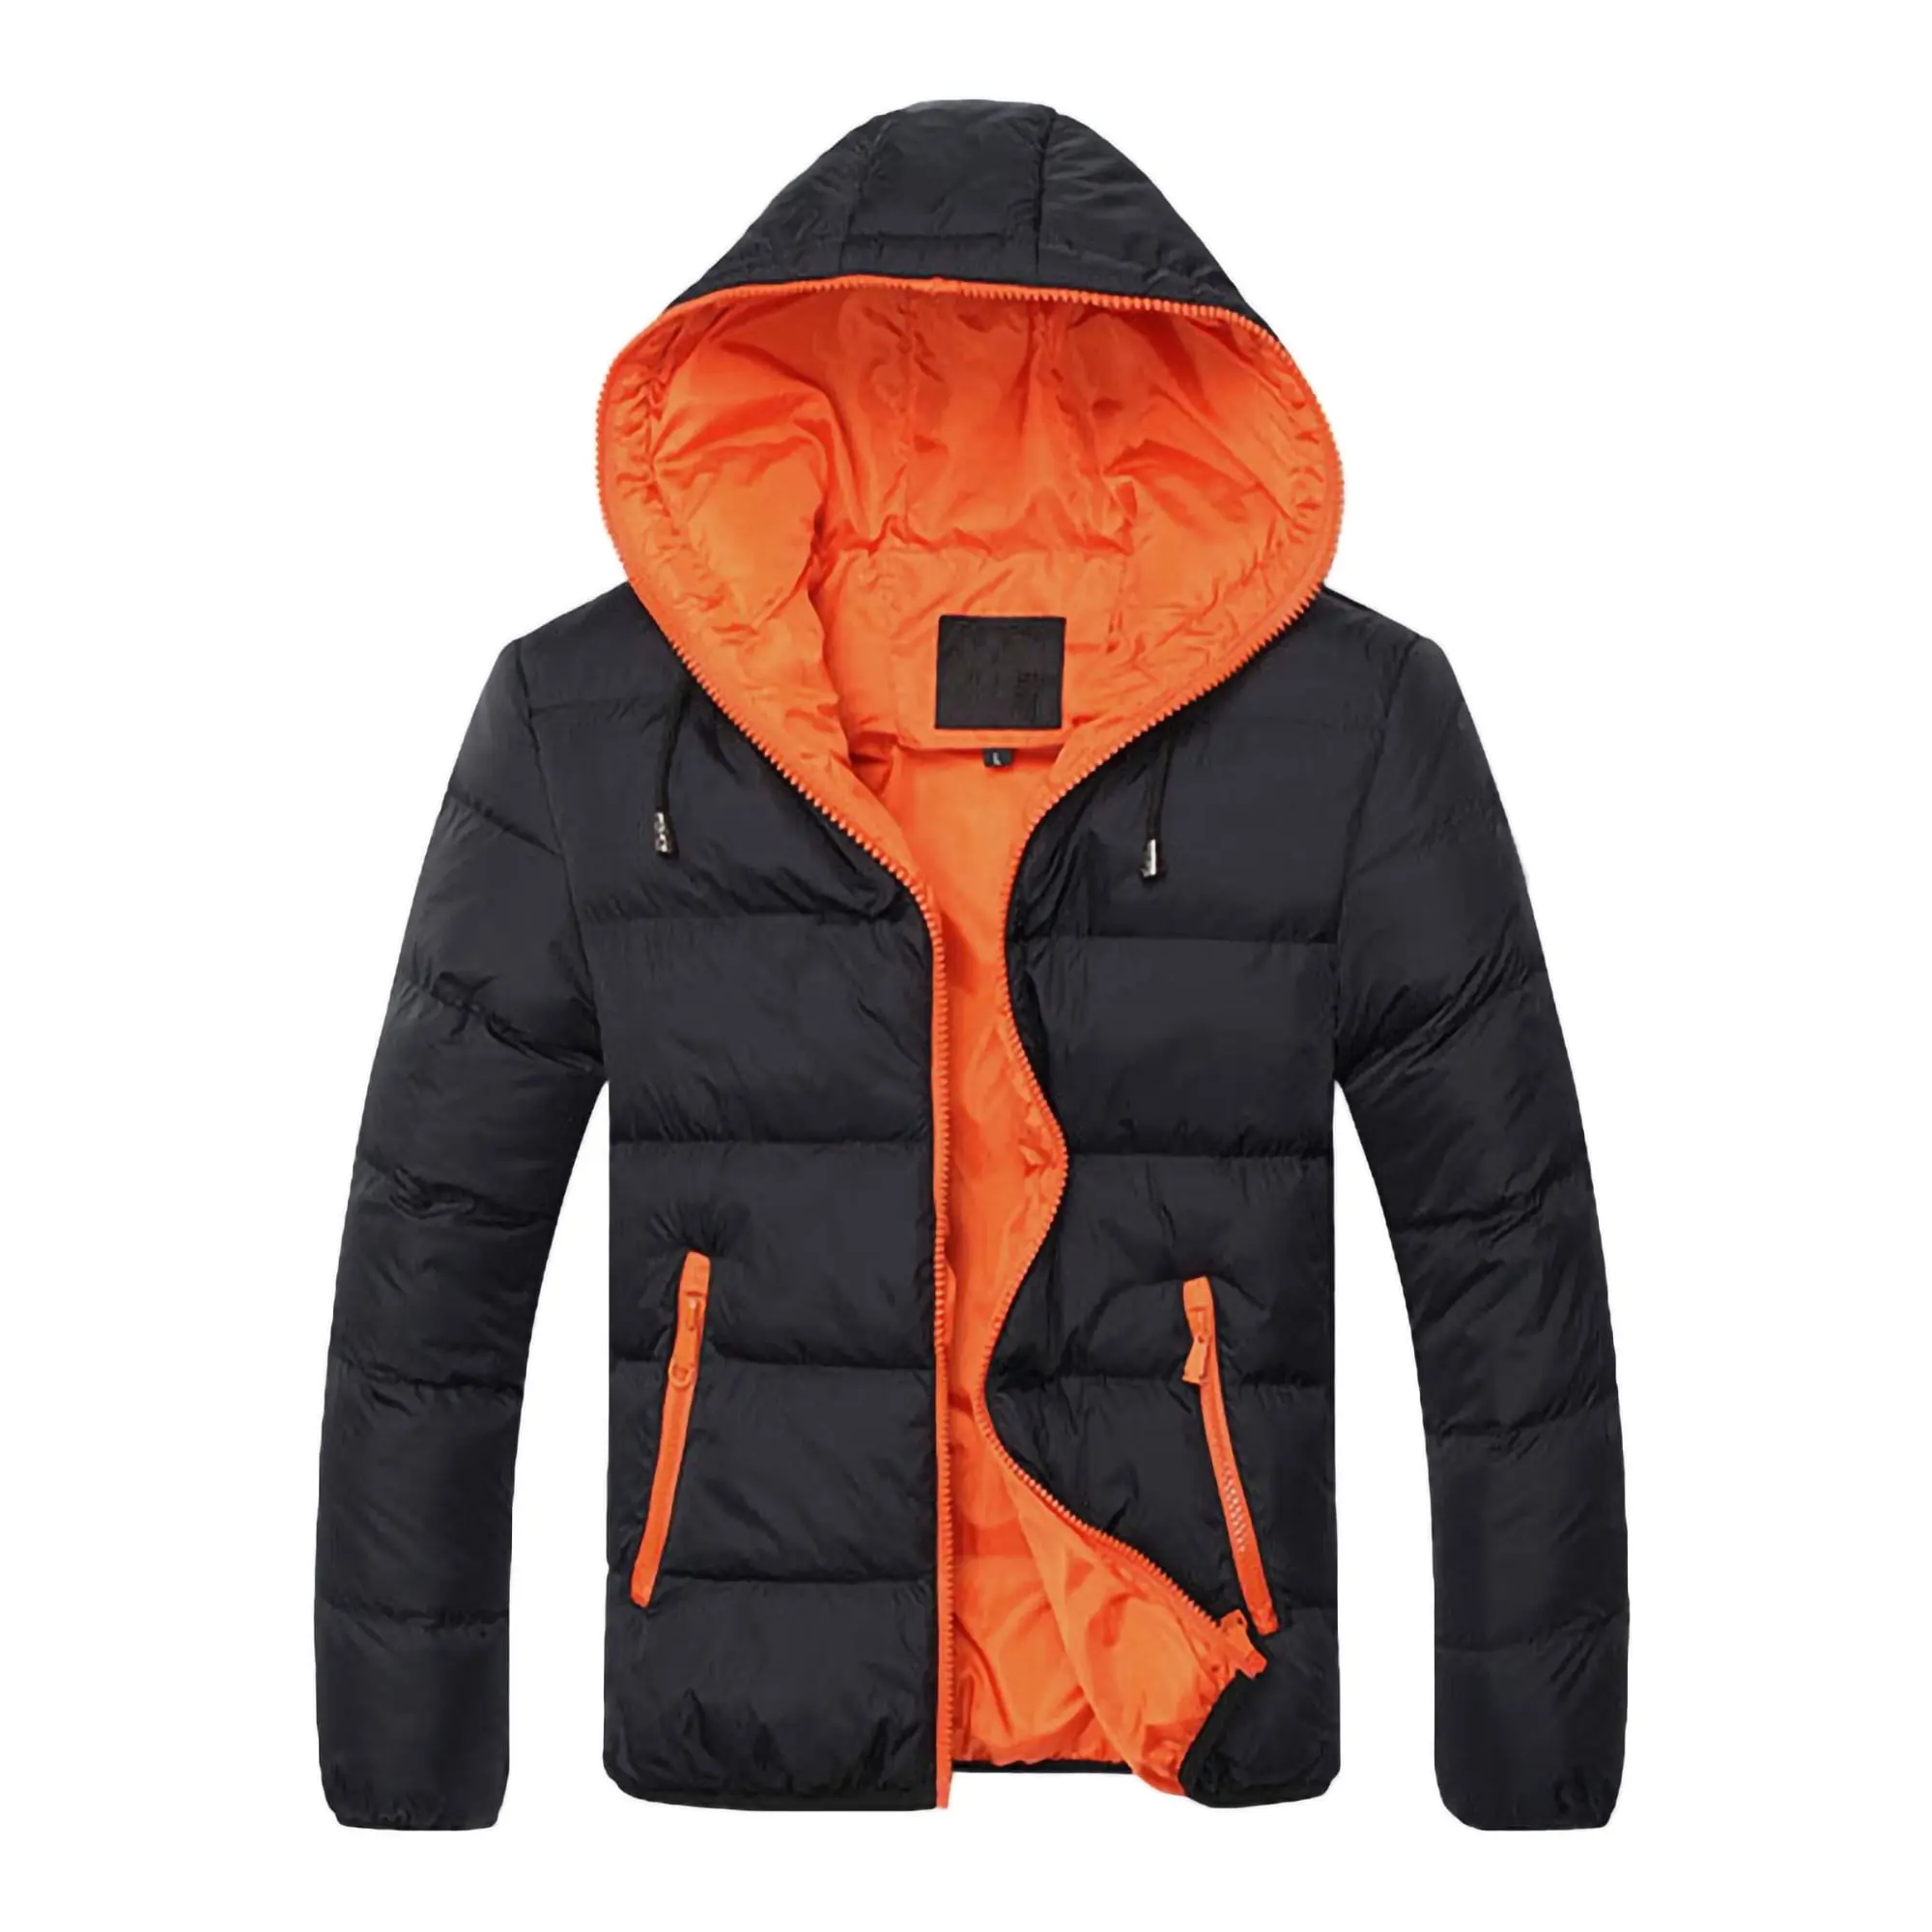 Piumino da sci traspirante caldo antivento per uomo tempo libero vestibilità rilassata giacca Parka da arrampicata piumino con cappuccio comprimibile Snowboardin